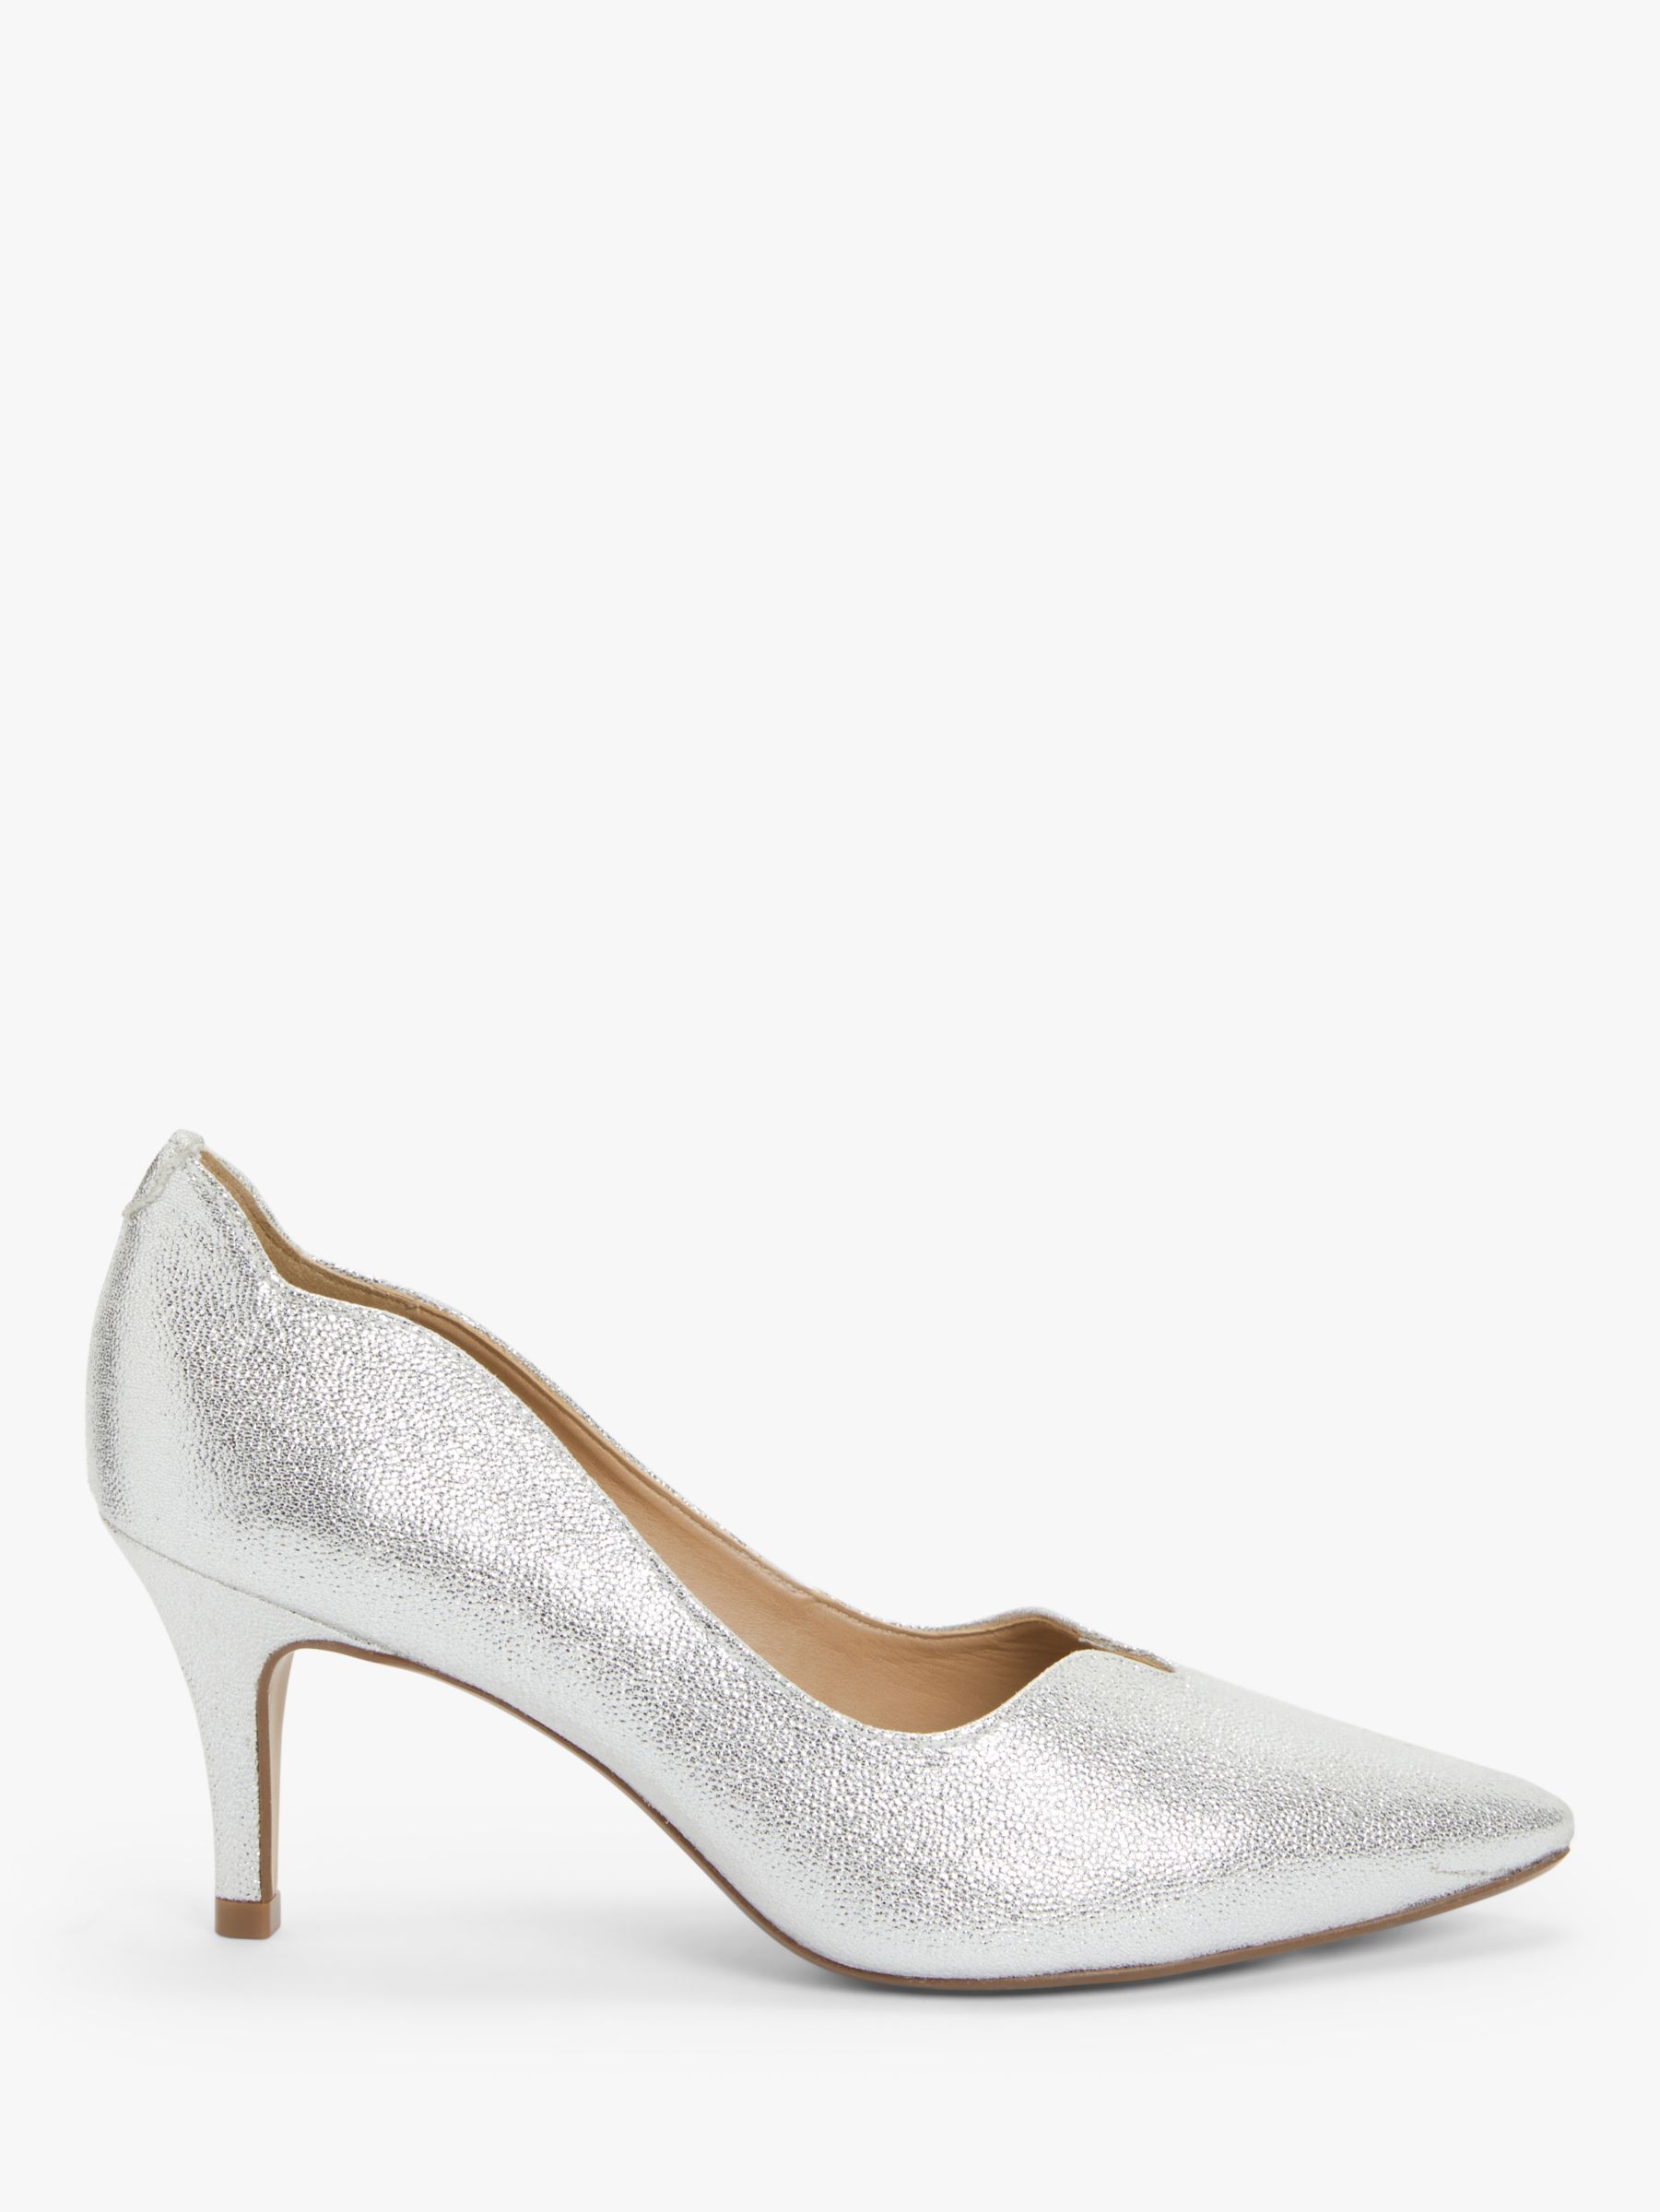 silver stiletto boots